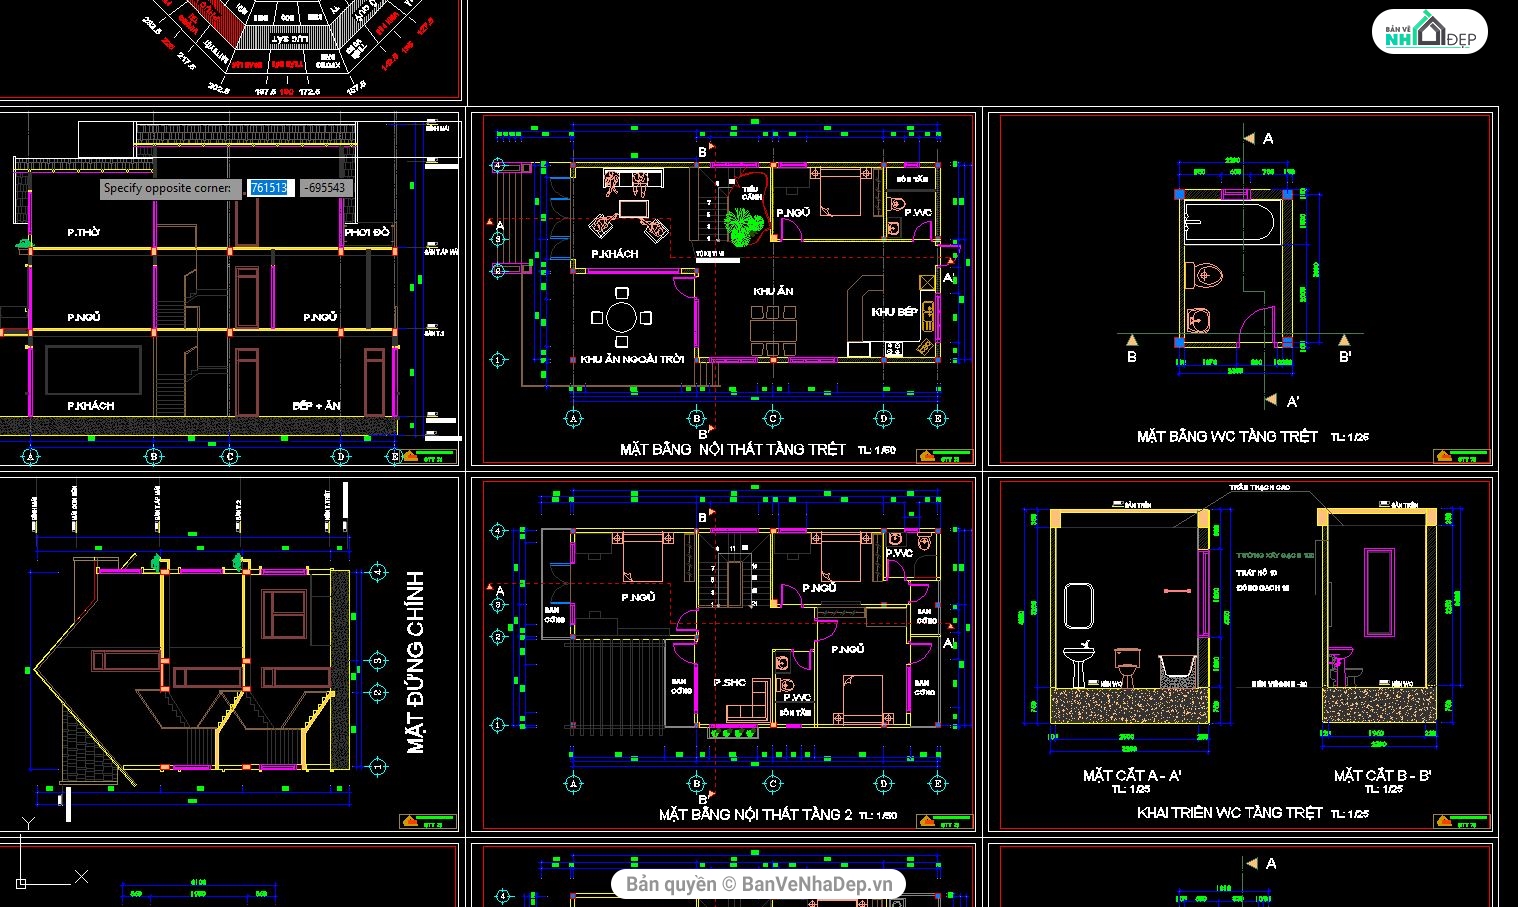 3DSMAX BIỆT THỰ,BIỆT THỰ 3 Tầng,3dmax biệt thự 3 tầng,bản vẽ cad biệt thự 3 tầng,BIỆT THỰ 3 Tầng 3.3x14.8m